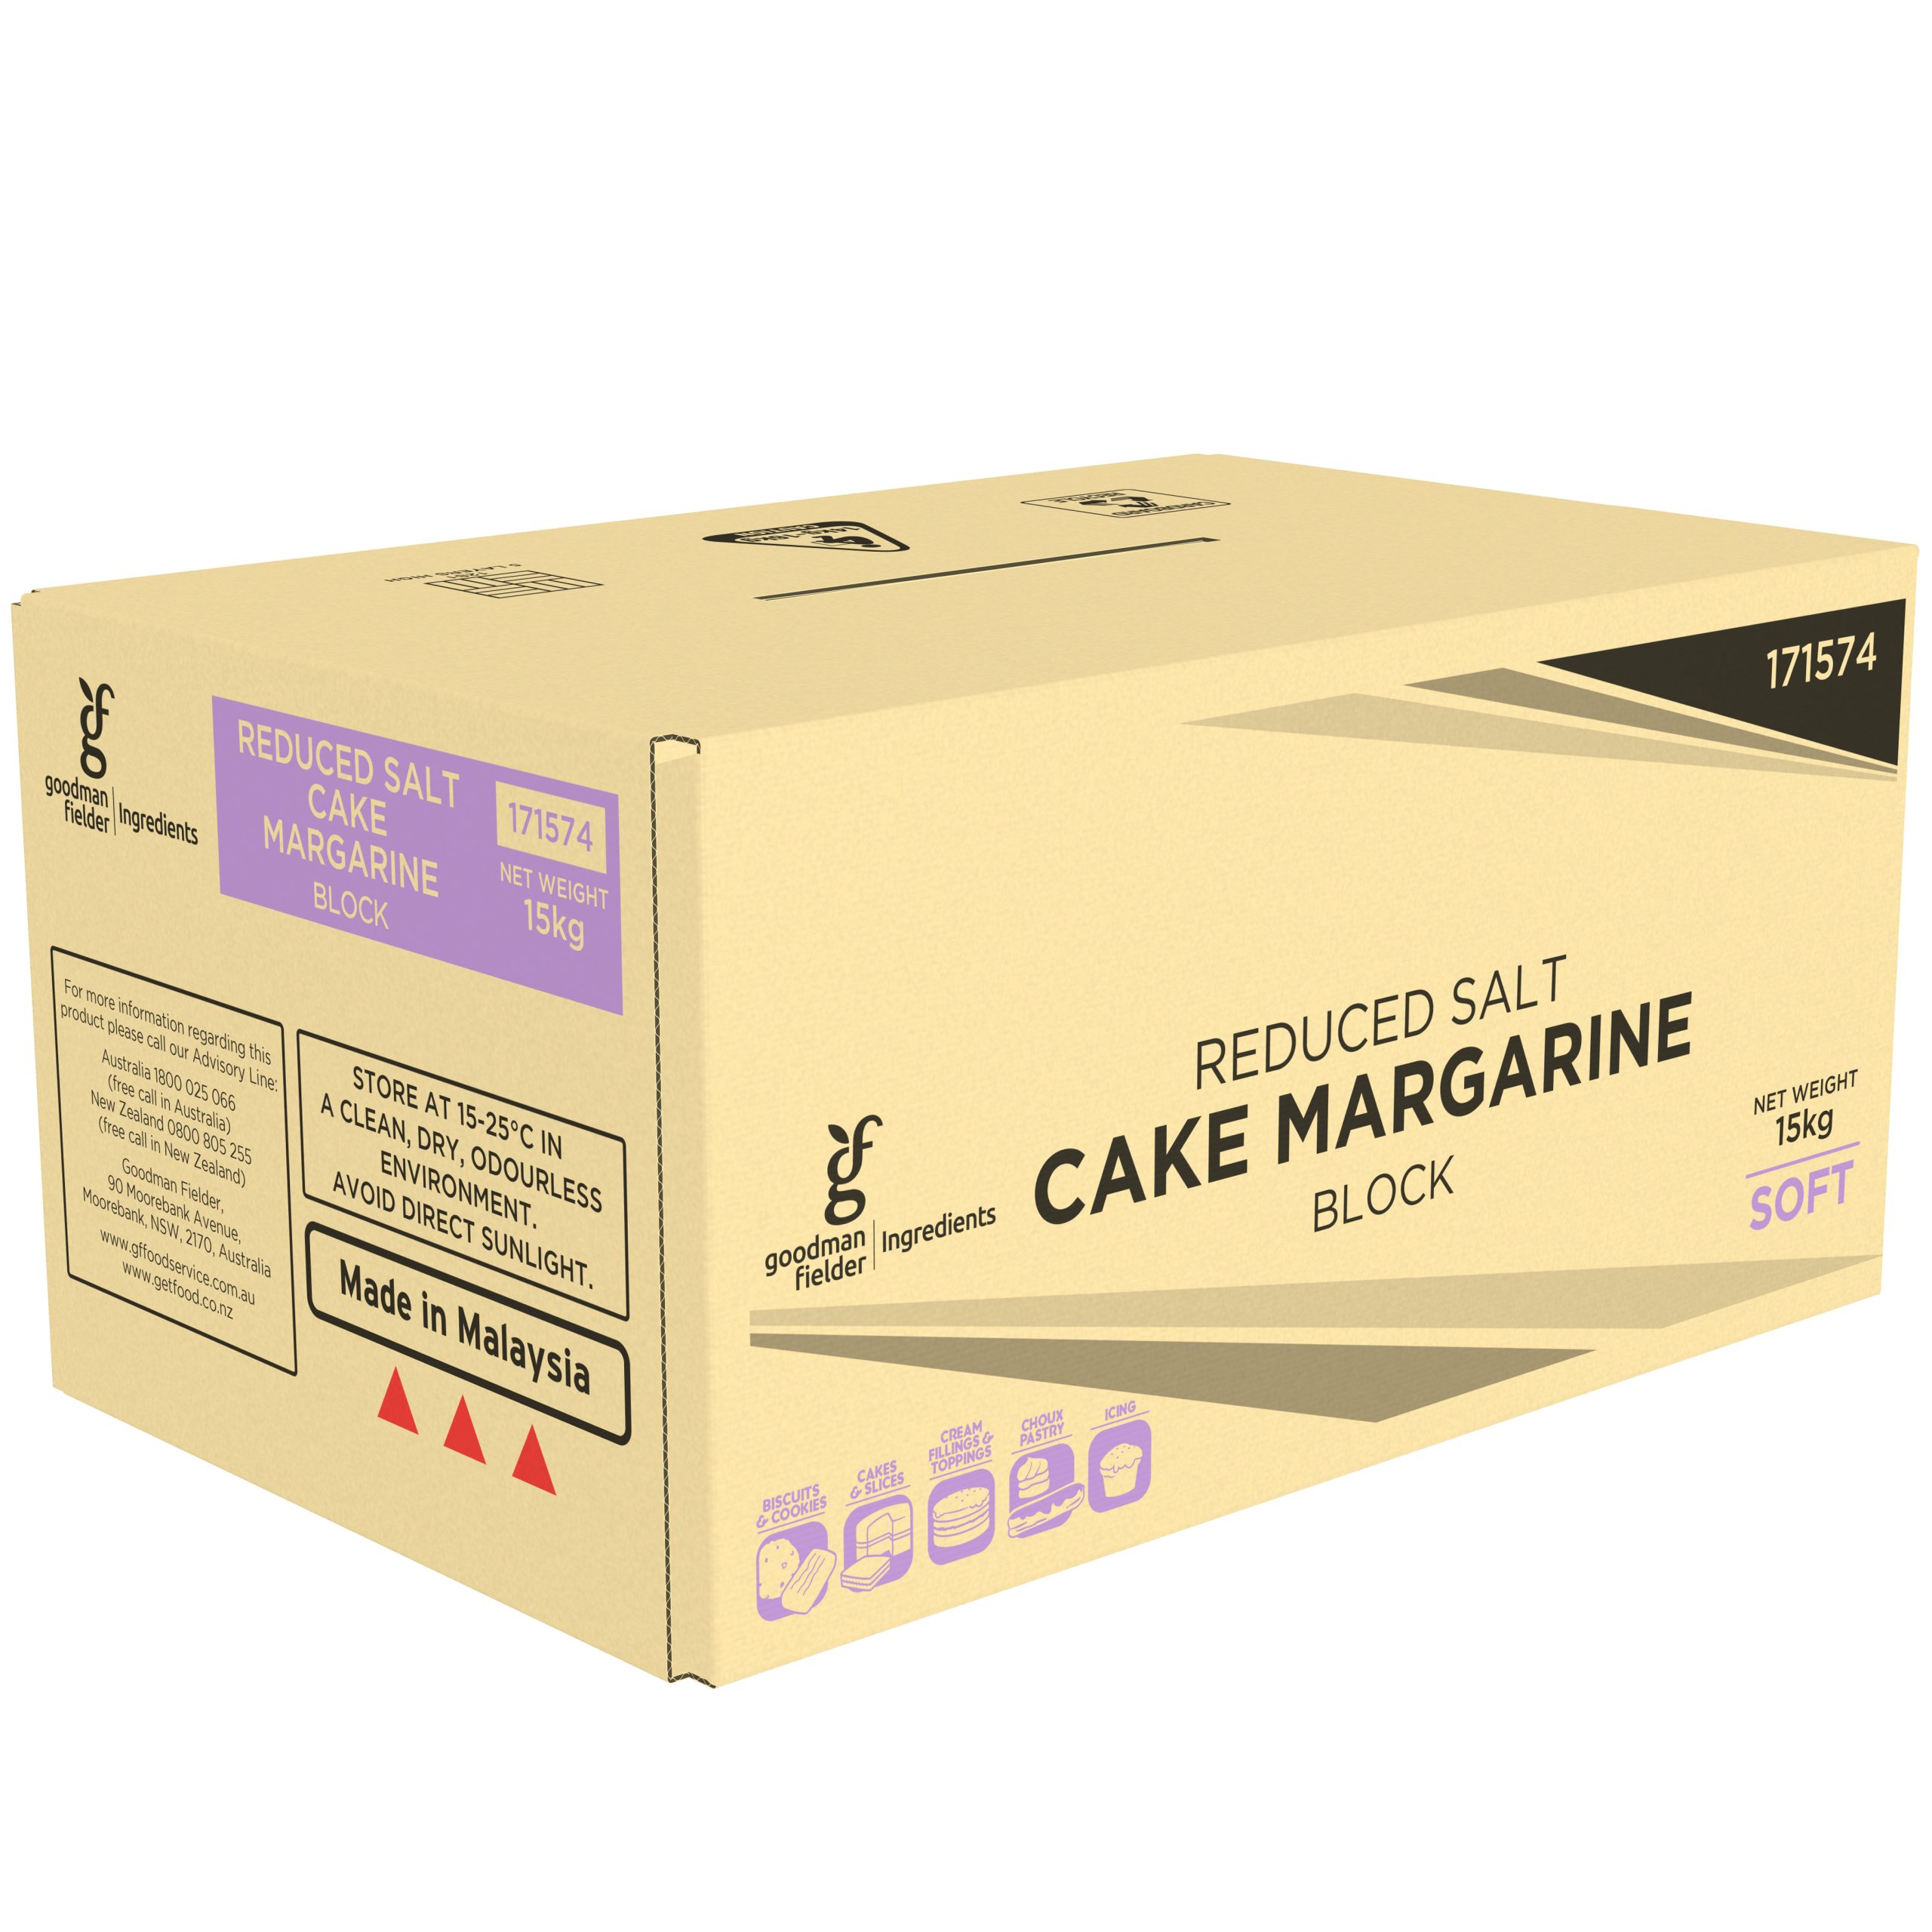 Goodman Fielder Ingredients Reduced Salt Cake Margarine Block Soft 15kg